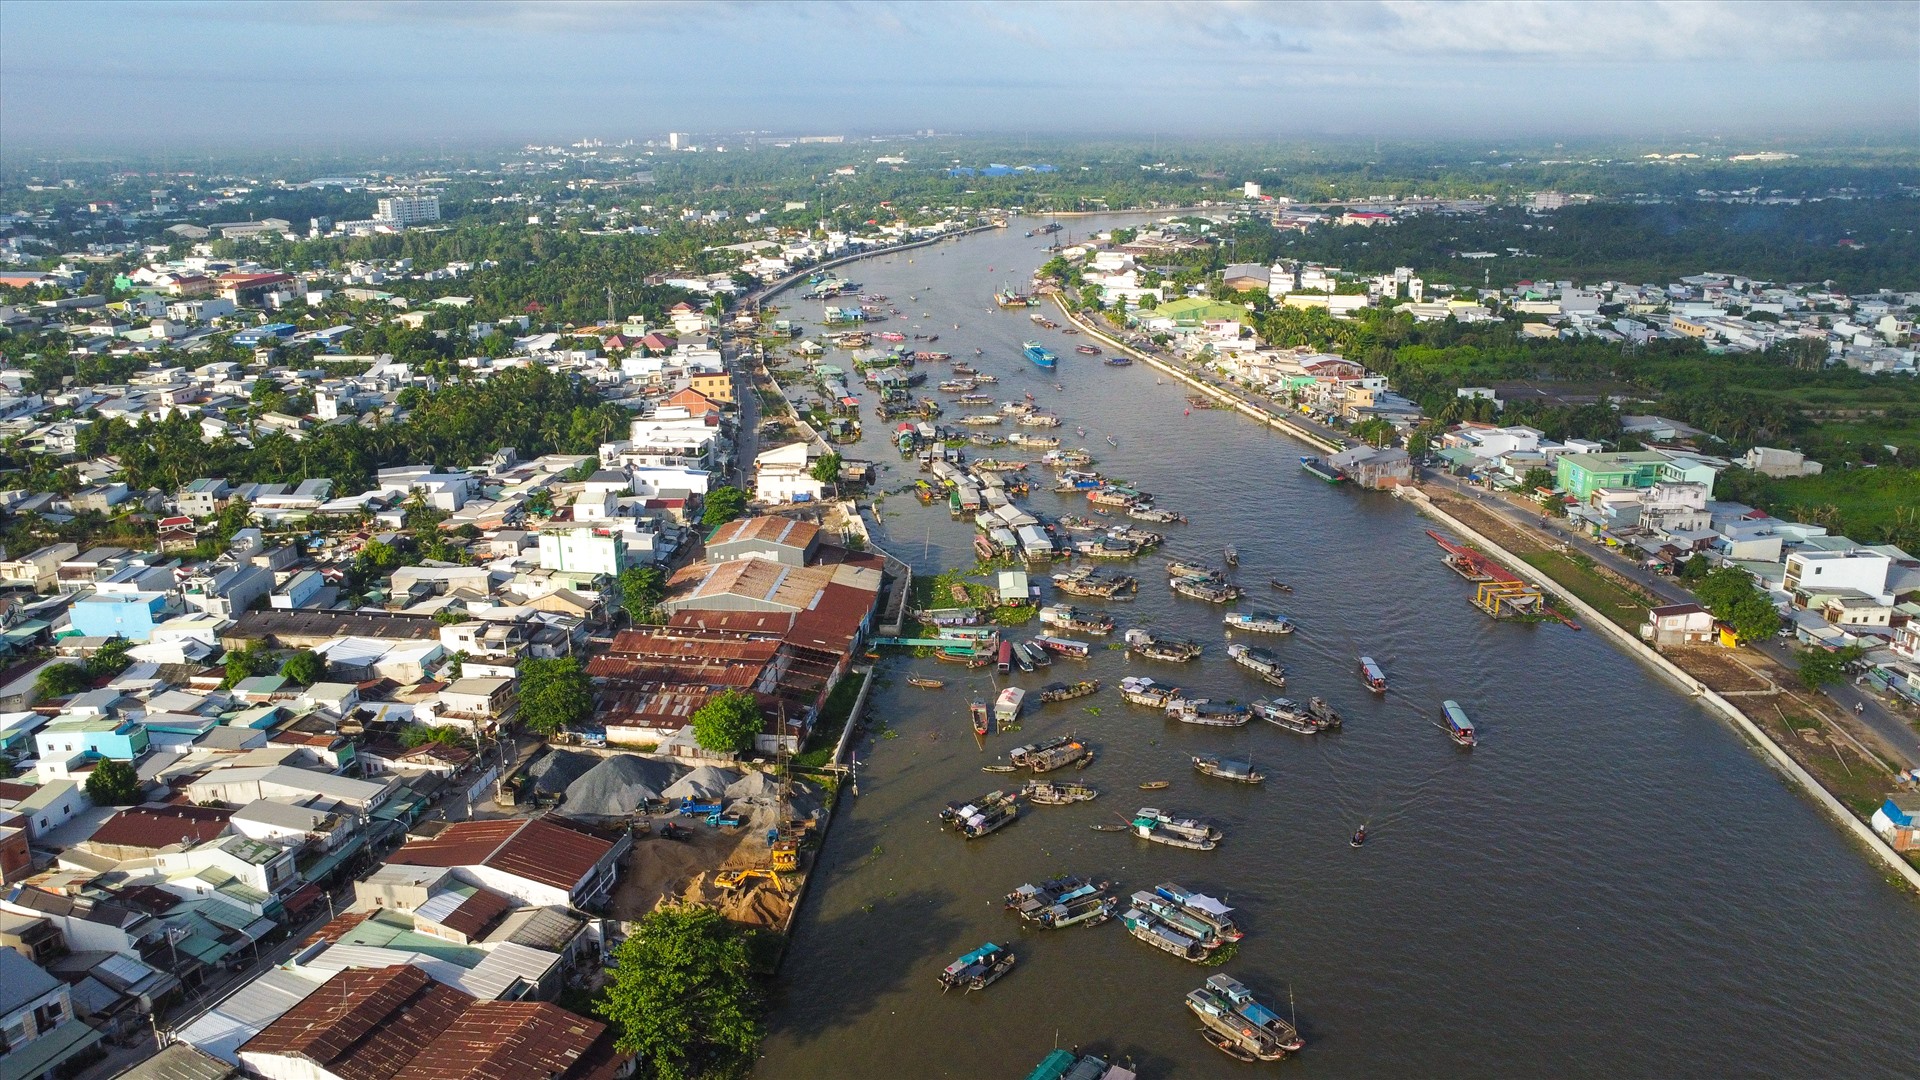 Sáng 19.7, ghi nhận của phóng viên Báo Lao Động tại chợ nổi Cái Răng (quận Cái Răng), tình trạng rác thải và lục bình đang “bủa vây” kín nhiều tàu, thuyền.